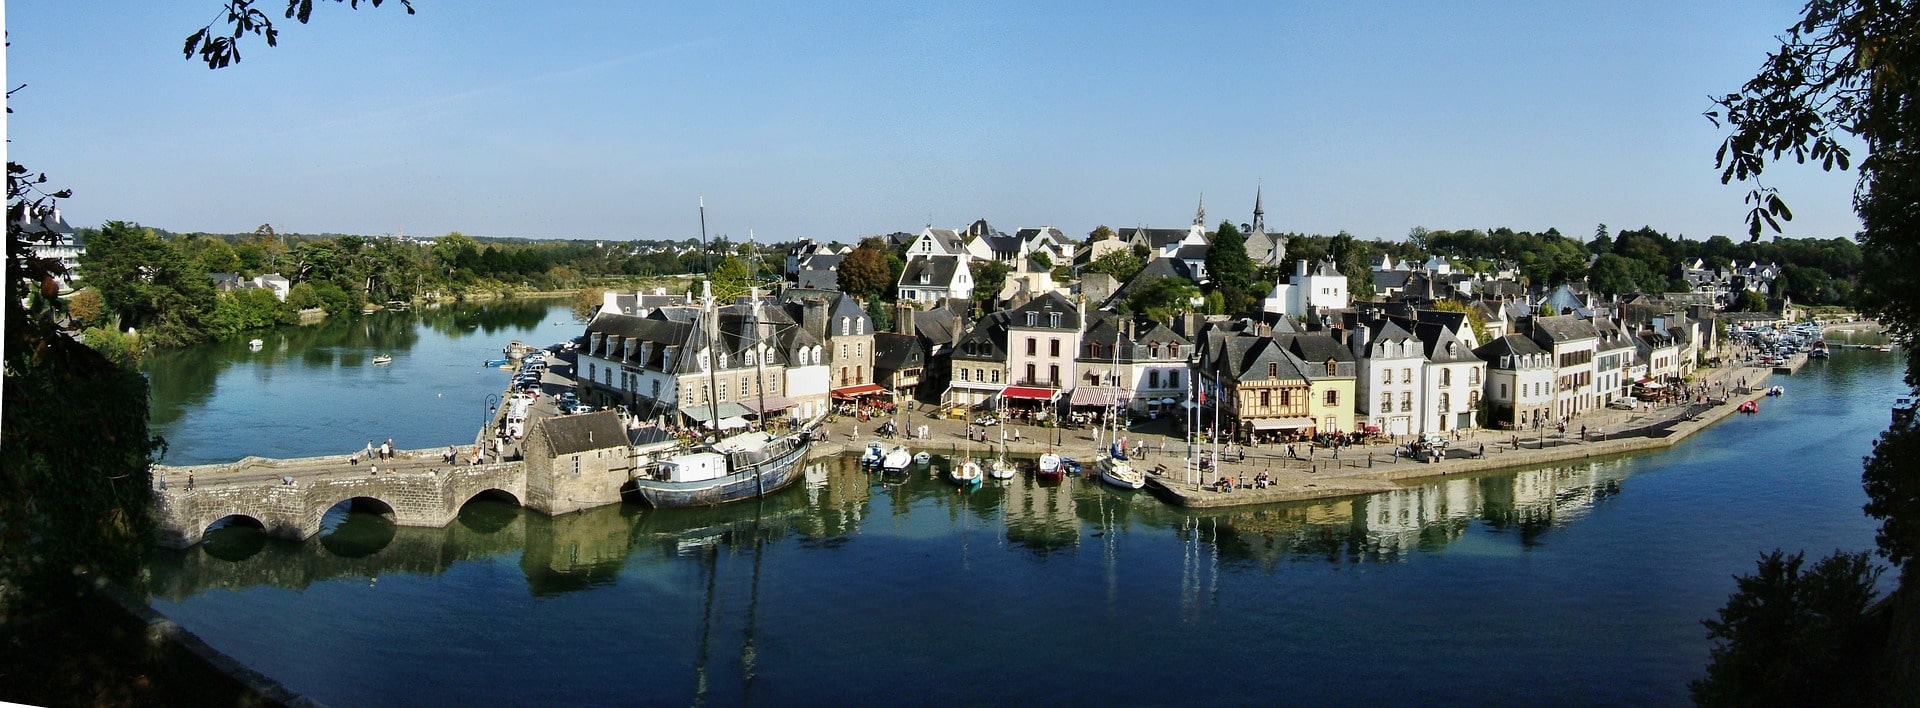 La vieille ville d'Auray, situé près de Vannes dans le Morbihan. Un lieu magique pour un team building dans le Morbihan.